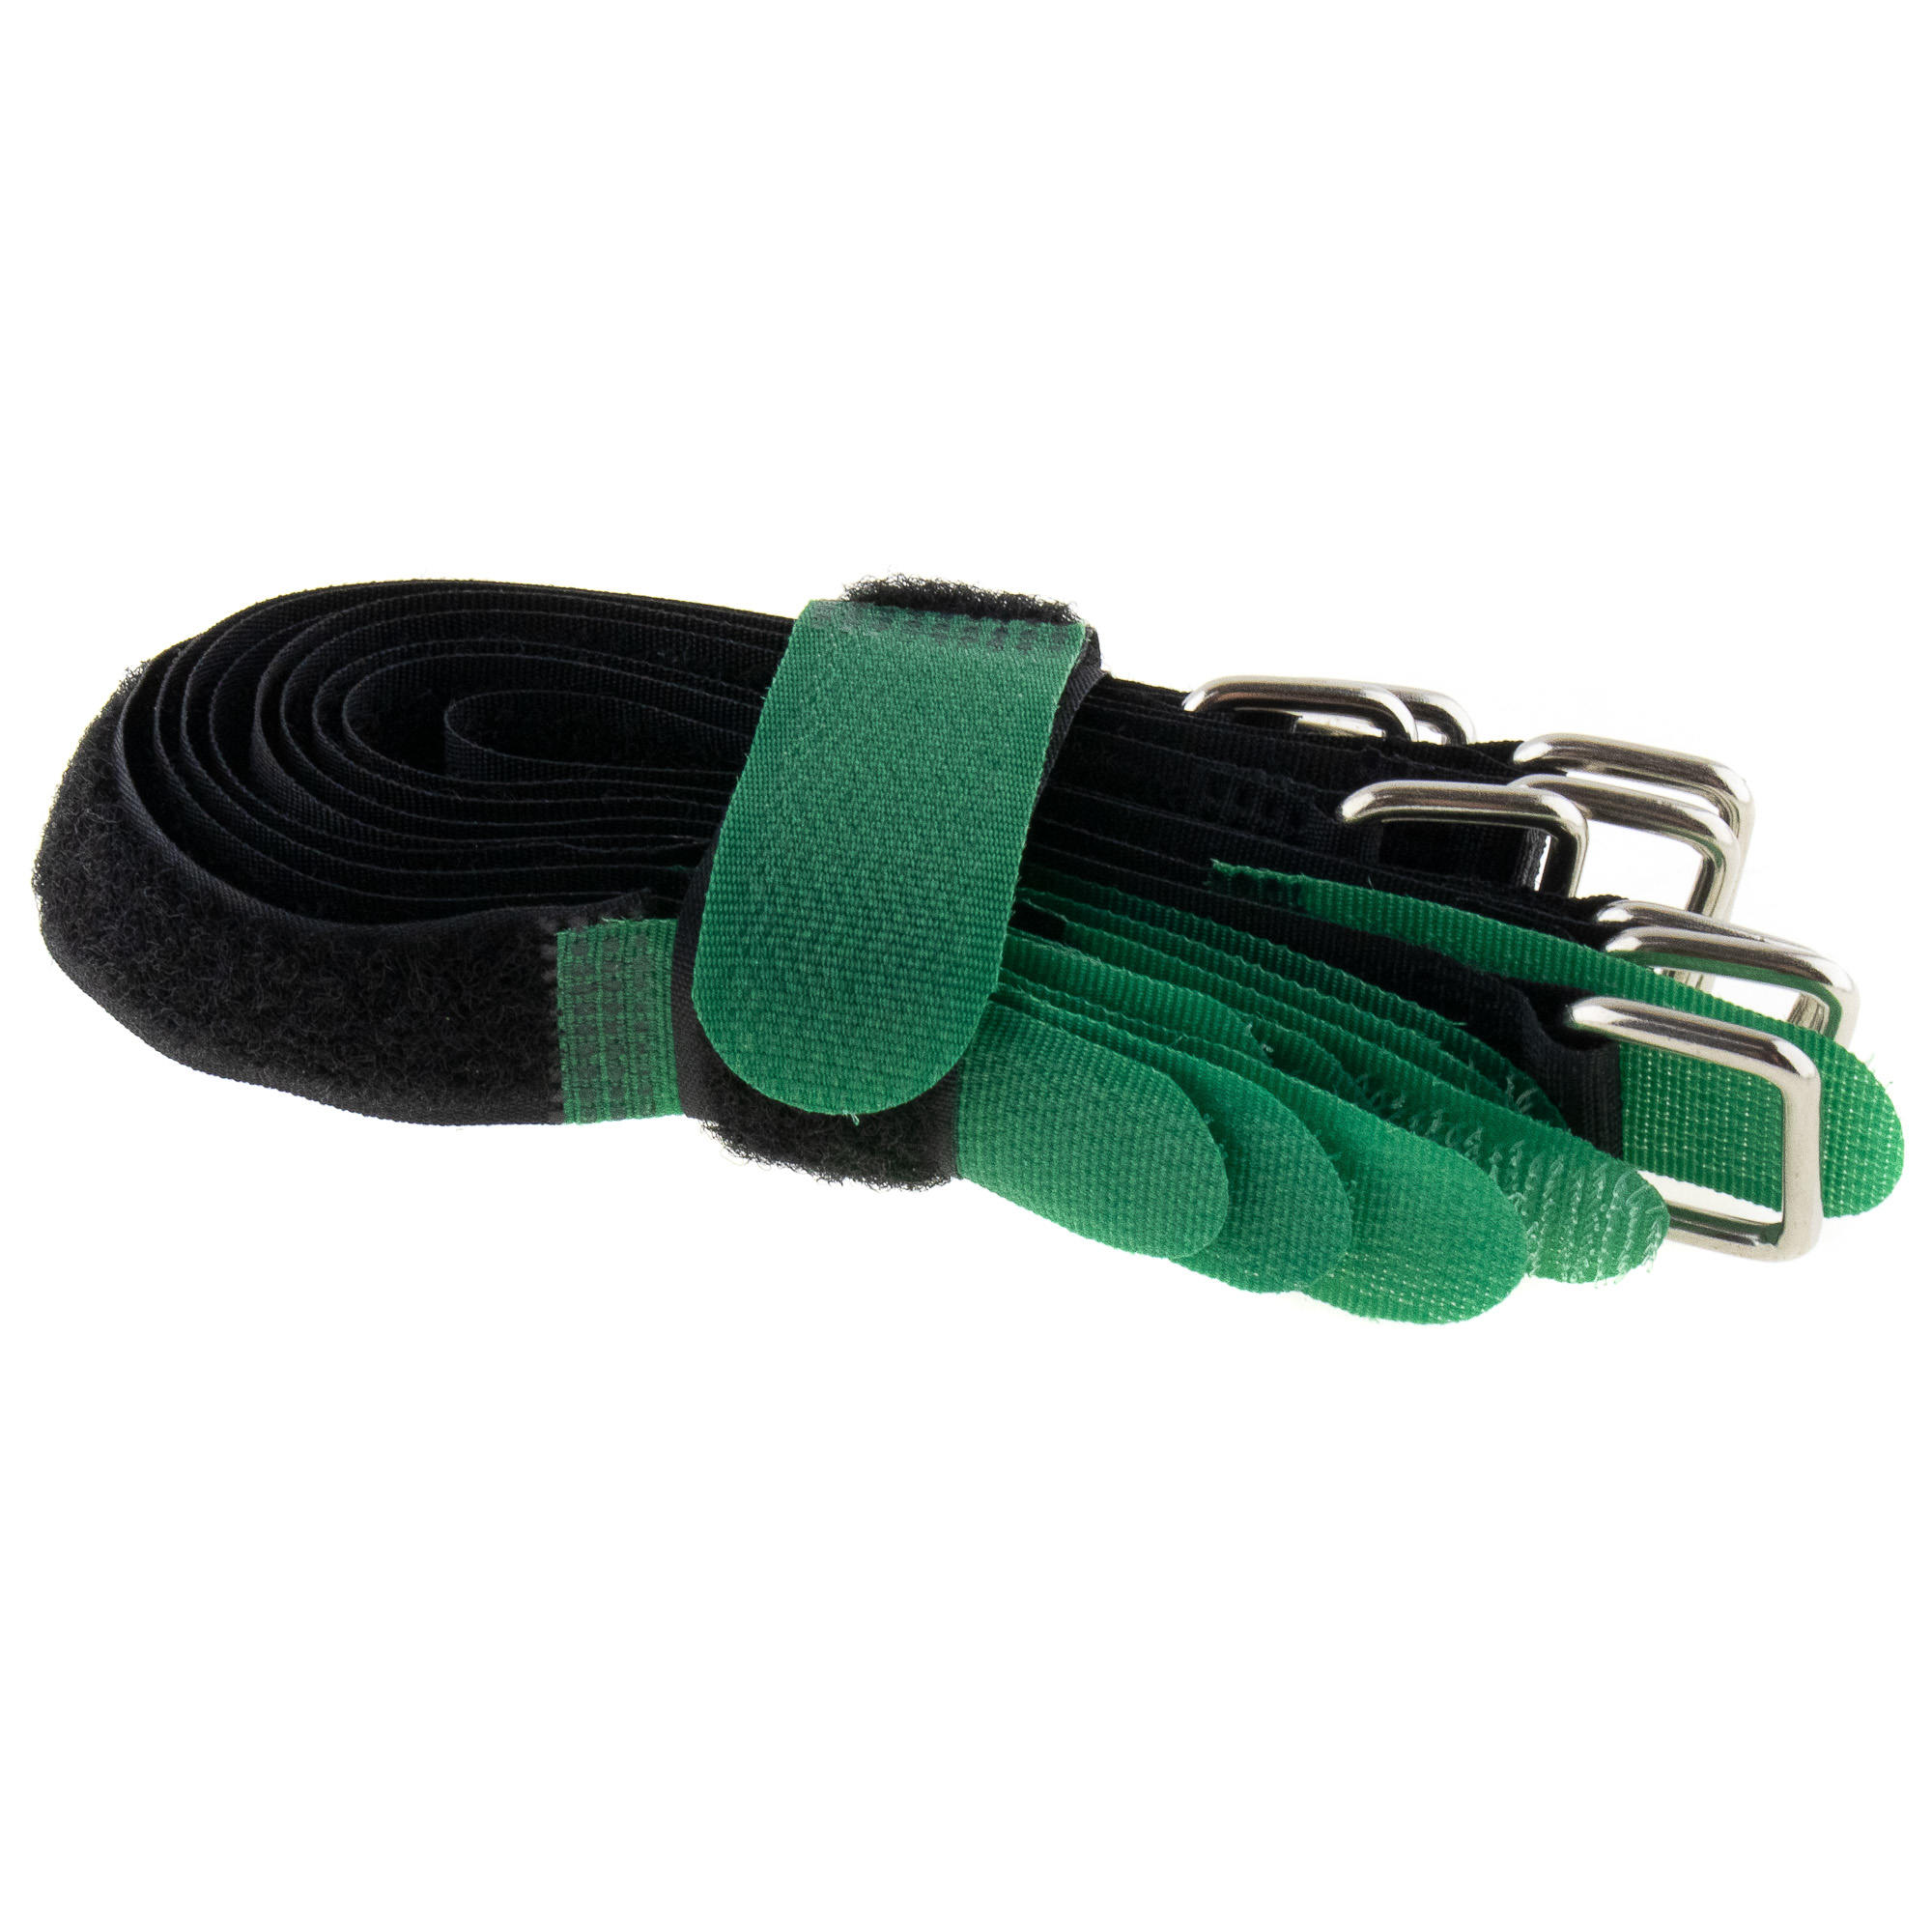 Hook-and-loop strap 200x20, black/green, crossed, 10PCS